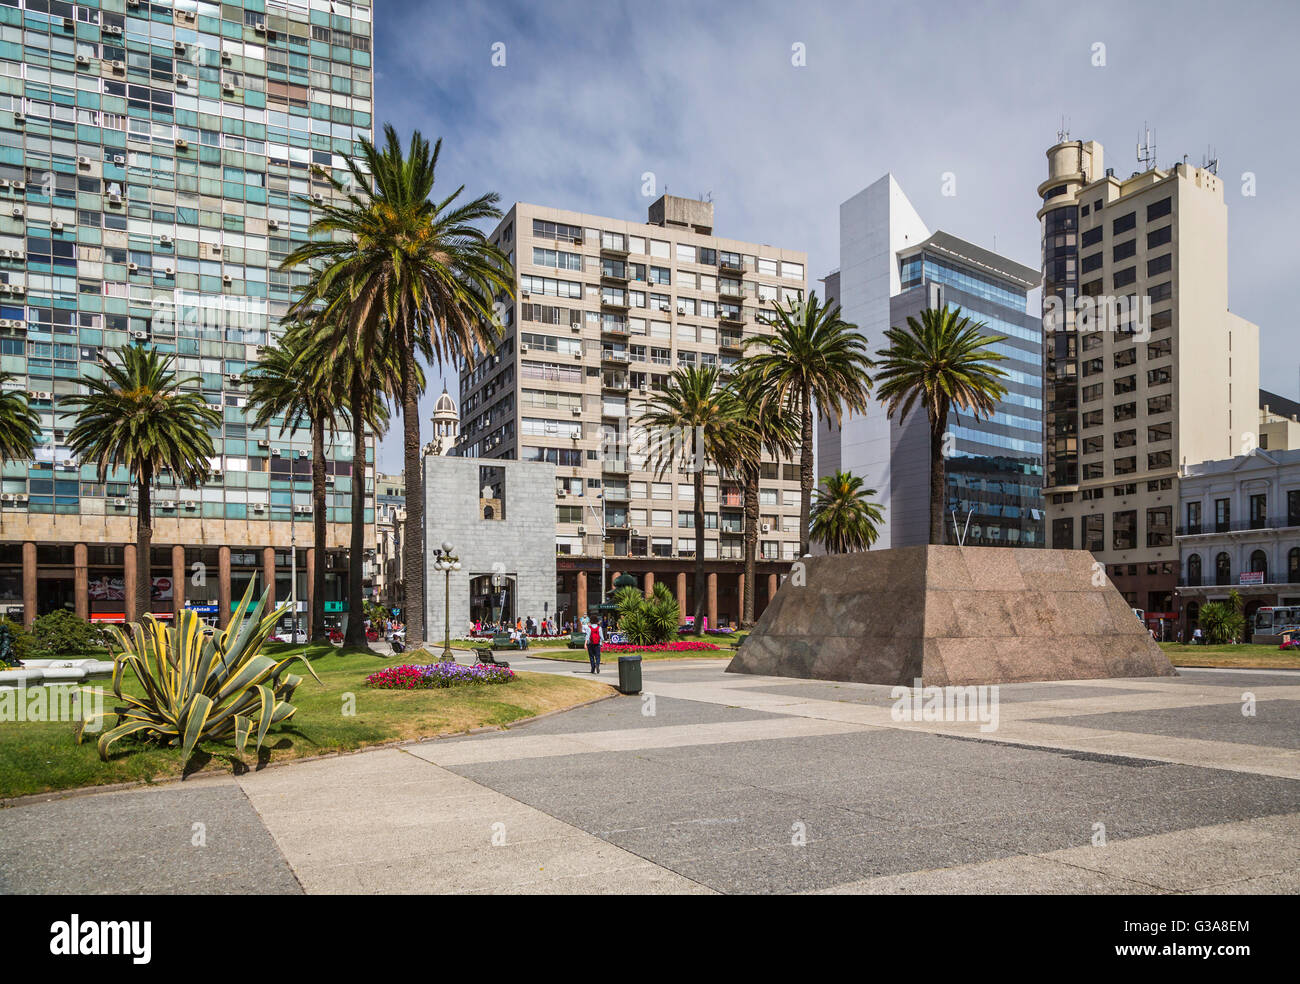 La place de l'indépendance, au centre-ville de Montevideo, Uruguay, Amérique du Sud. Banque D'Images